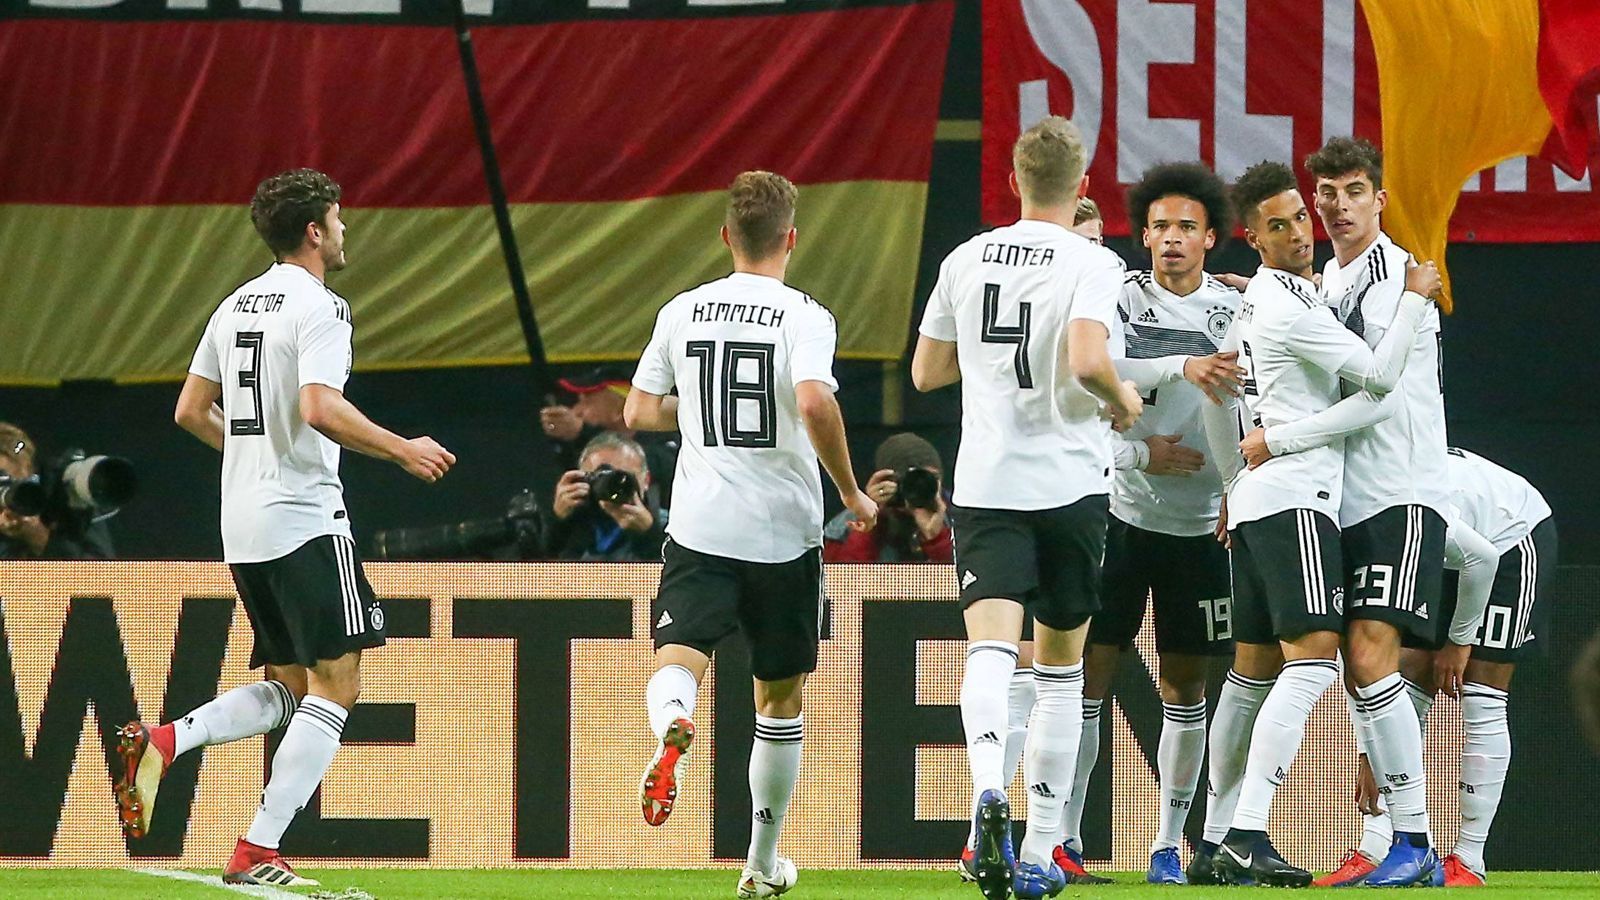 
                <strong>Das DFB-Team gegen Russland in der Einzelkritik</strong><br>
                Die deutsche Nationalmannschaft feiert mit vielen jungen Wilden ein 3:0 gegen Russland. Wir haben den Auftritt benotet.
              